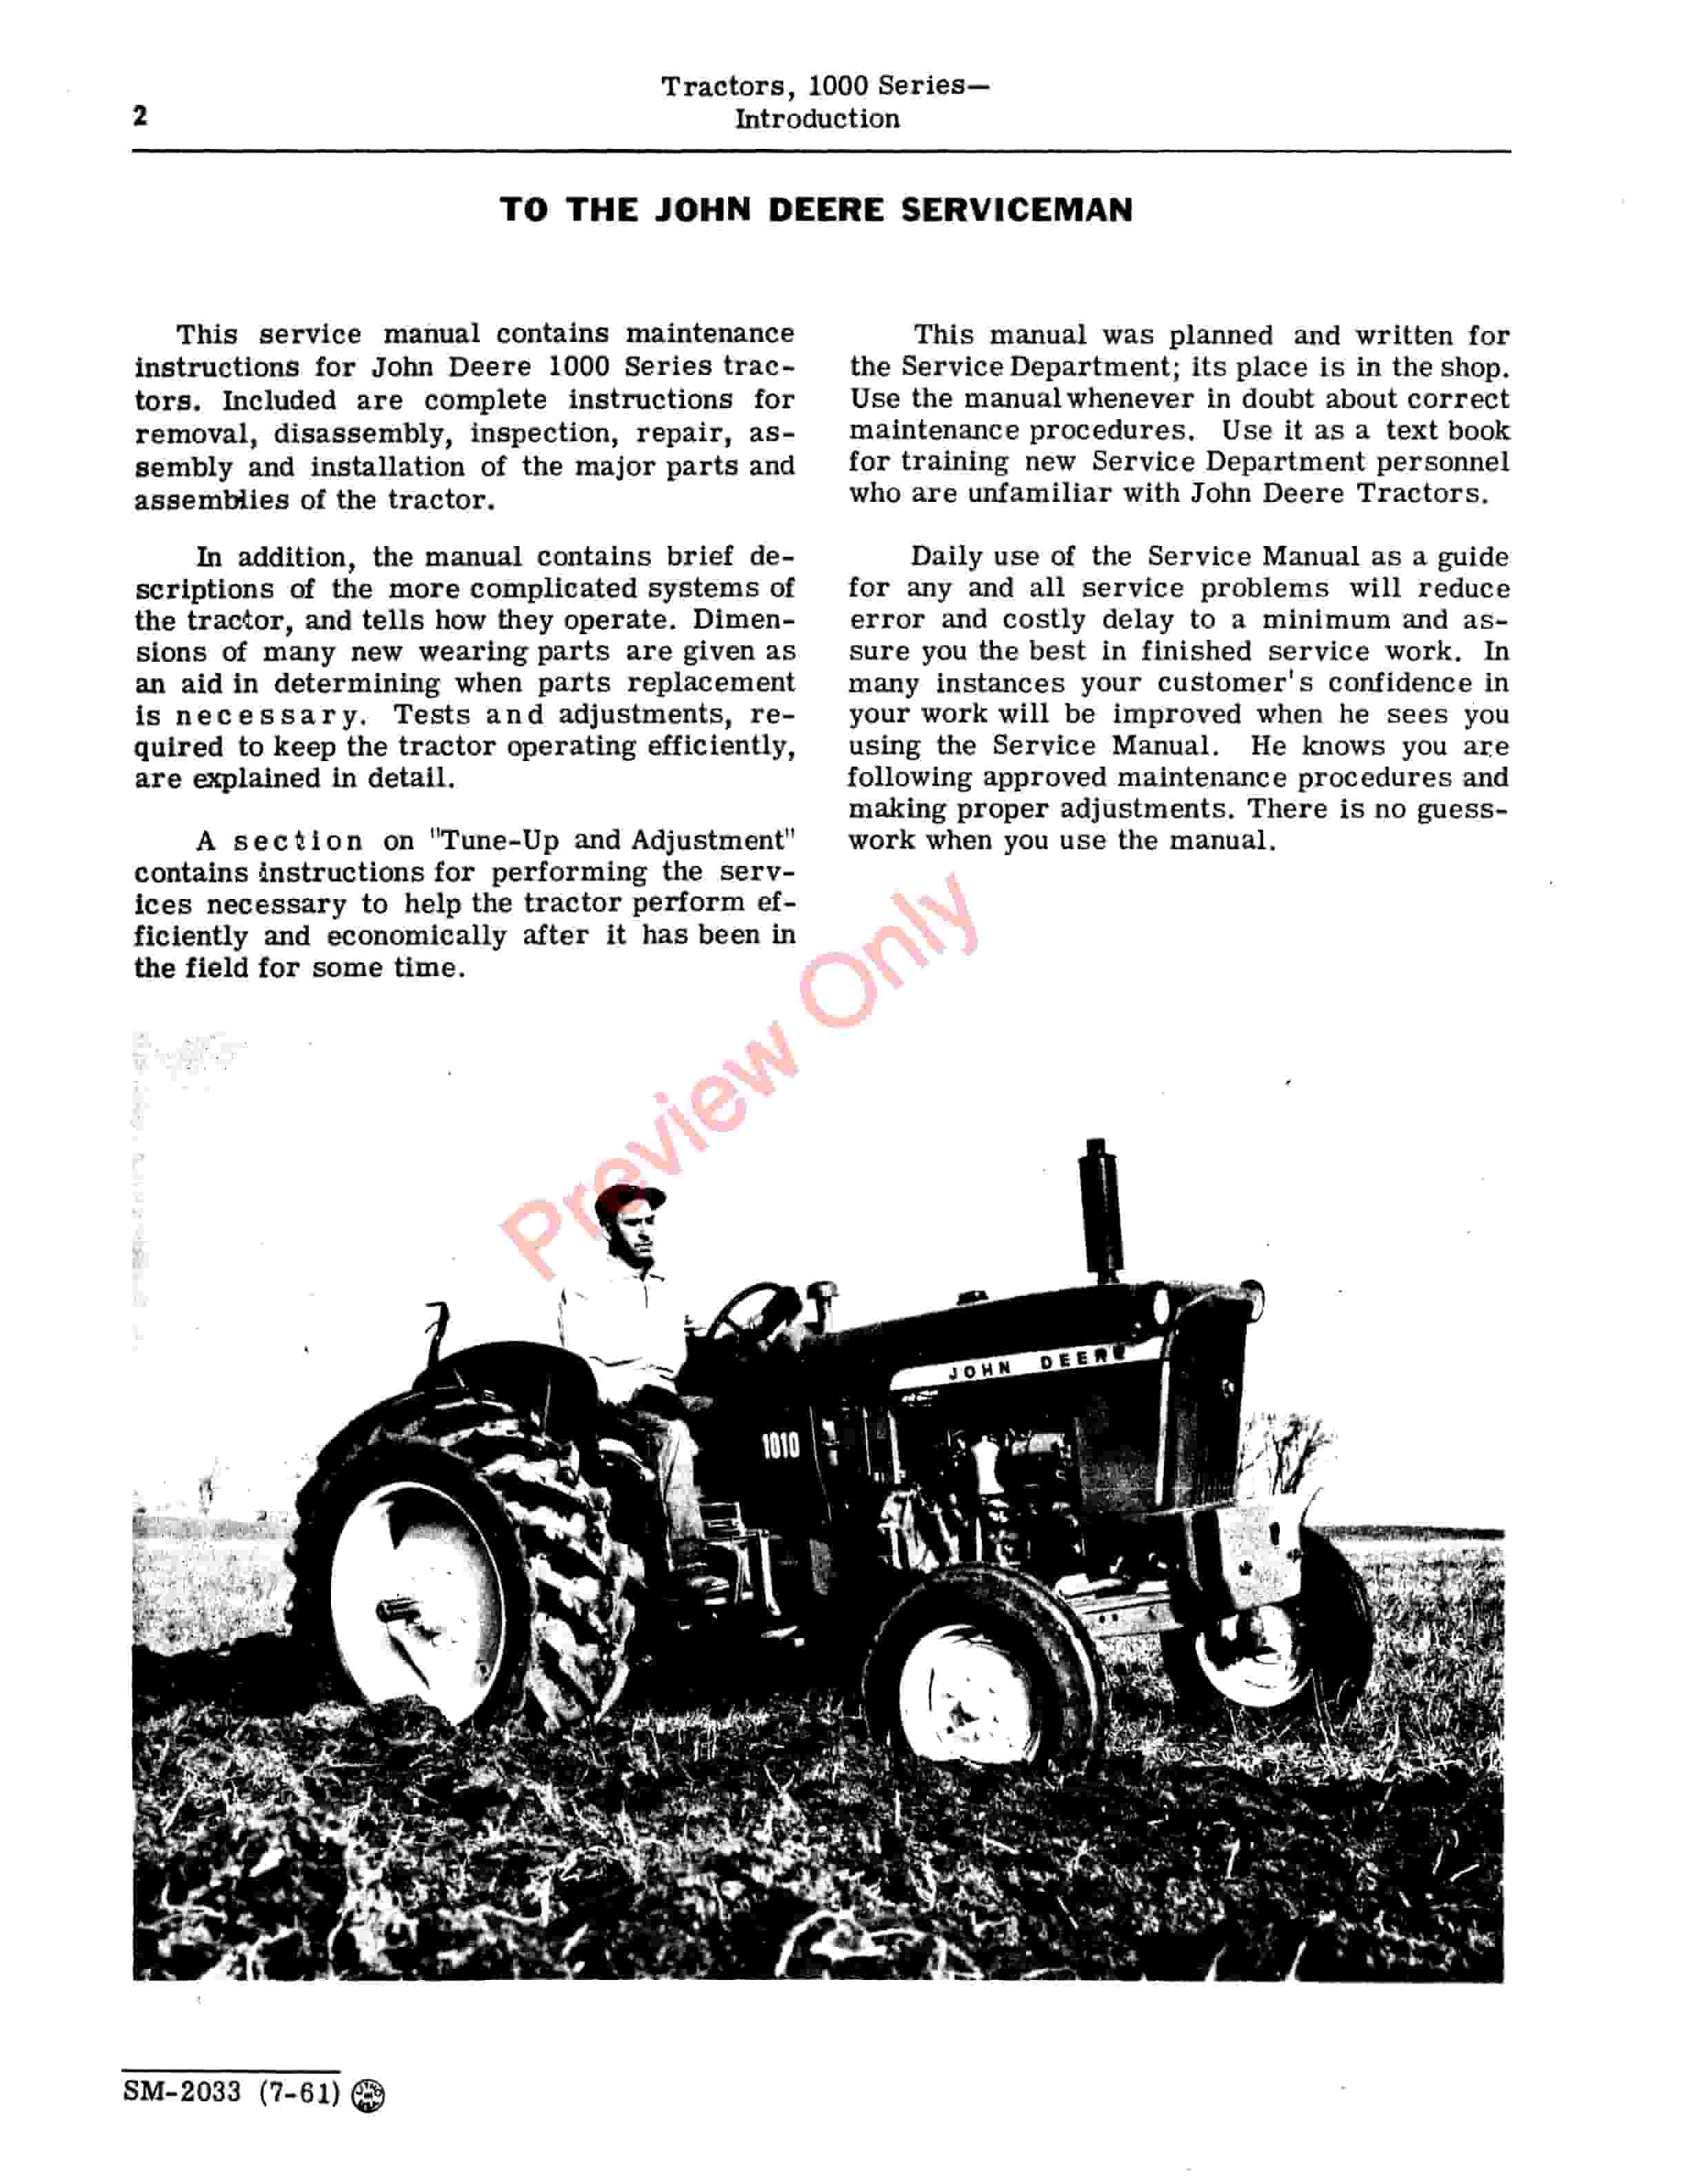 John Deere 1000 Series Tractors Service Manual SM2033 01MAR65 4